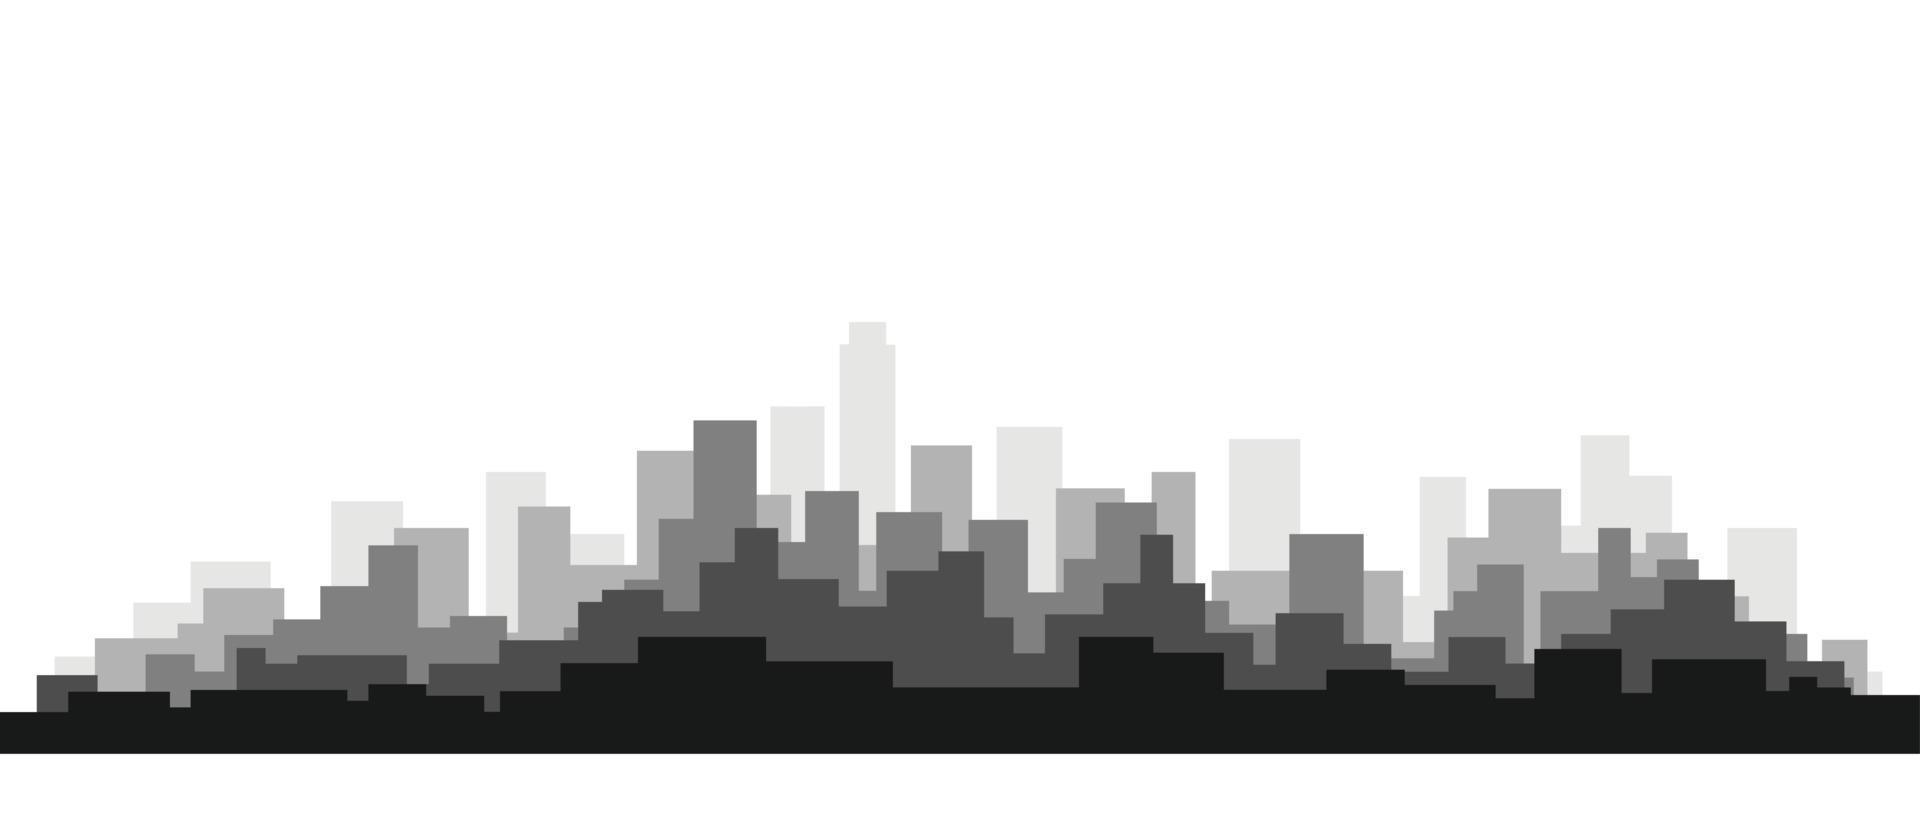 enkelhet modern stadsbild silhuett på vit bakgrund. vektor